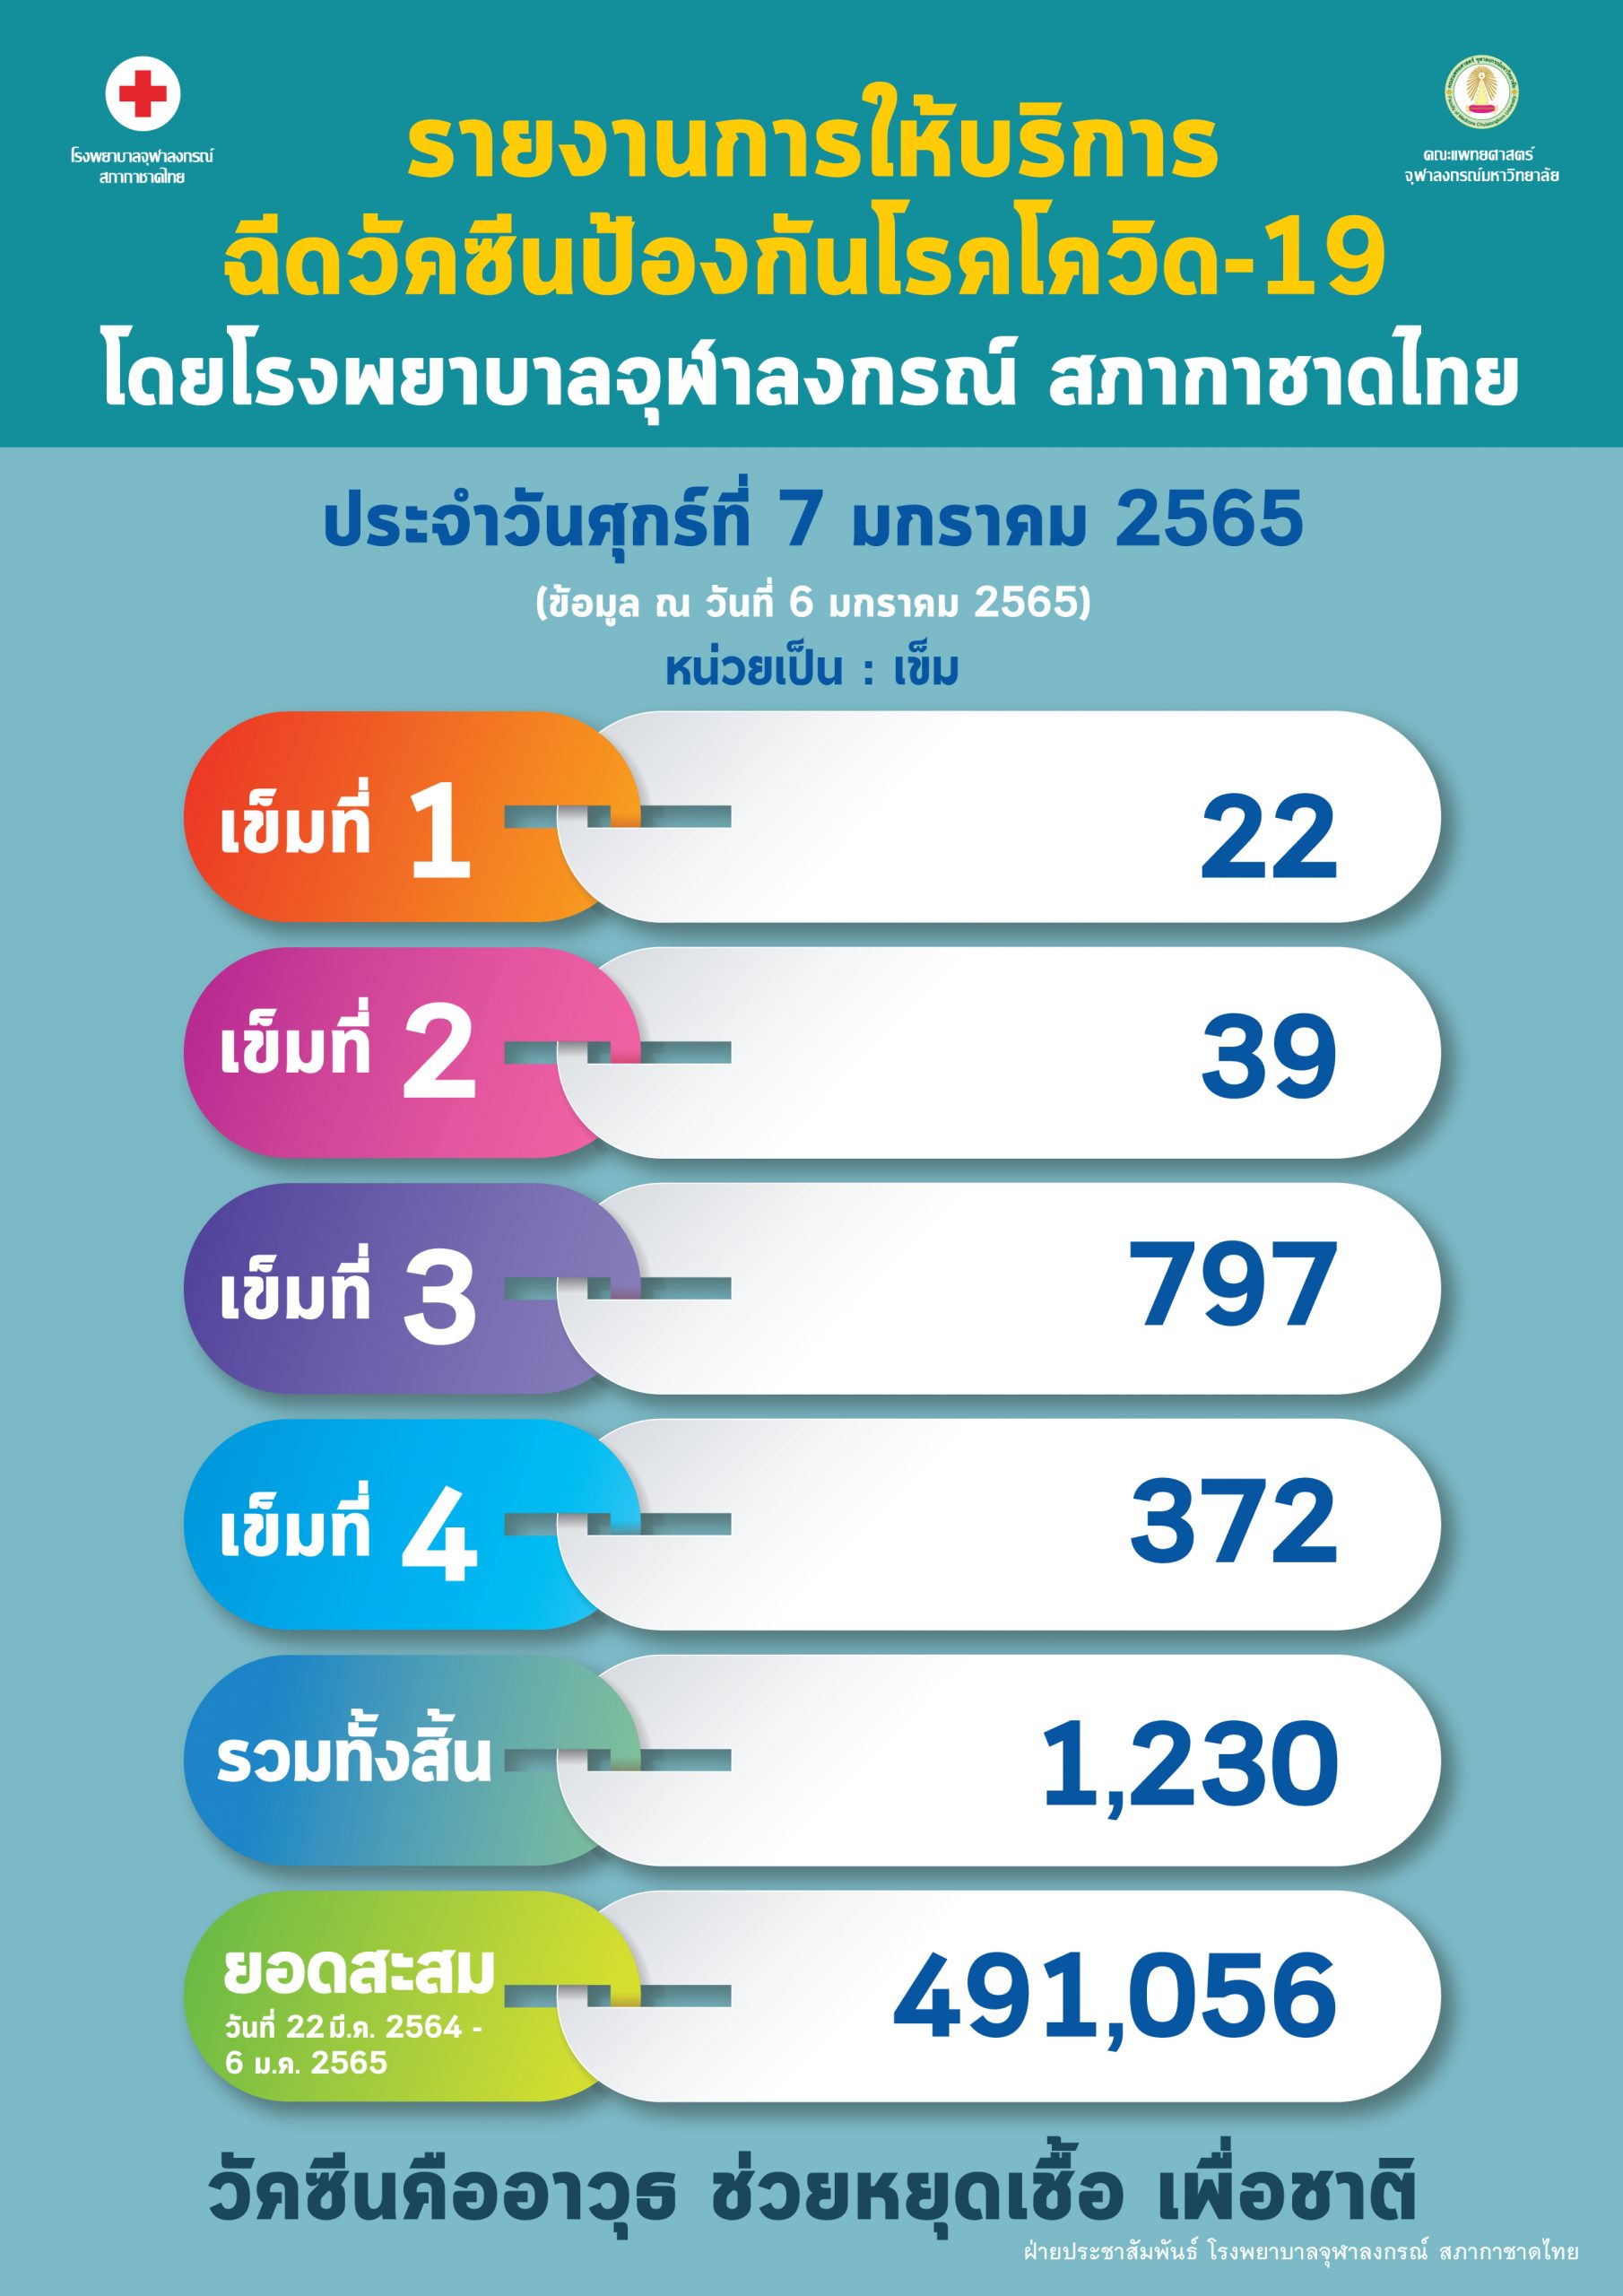 สถานการณ์โรคติดเชื้อไวรัสโคโรนา 2019 (COVID-19) โรงพยาบาลจุฬาลงกรณ์ สภากาชาดไทย ประจำวันเสาร์ที่ 22 มกราคม 2565